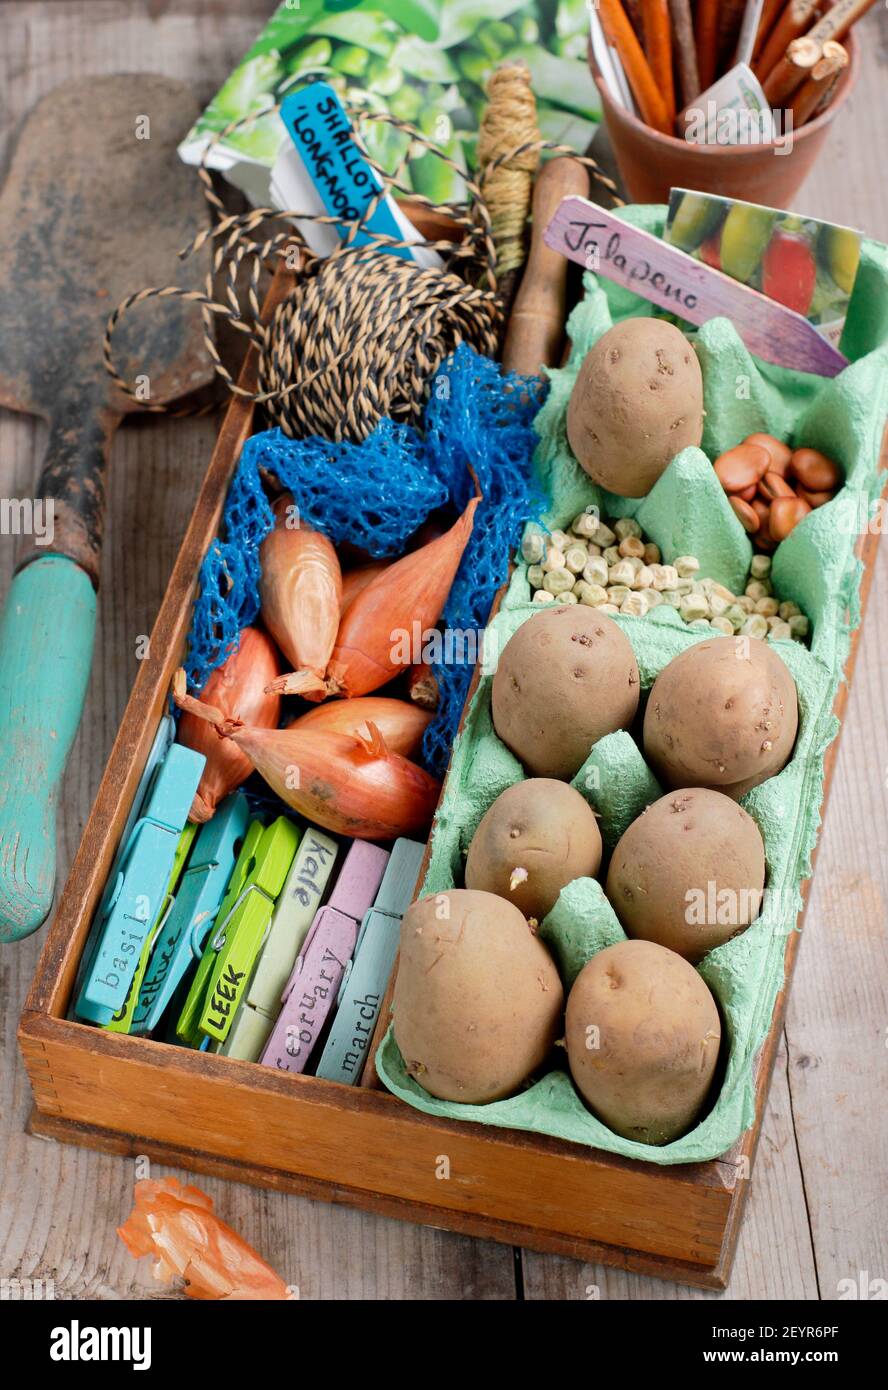 Wachsen Sie Ihr eigenes. Saatkartoffeln, Schalotten-Set, Erbse, Chili und Brotsamen mit Gartenbausatz auf einer Topfbank Ende Februar. VEREINIGTES KÖNIGREICH Stockfoto